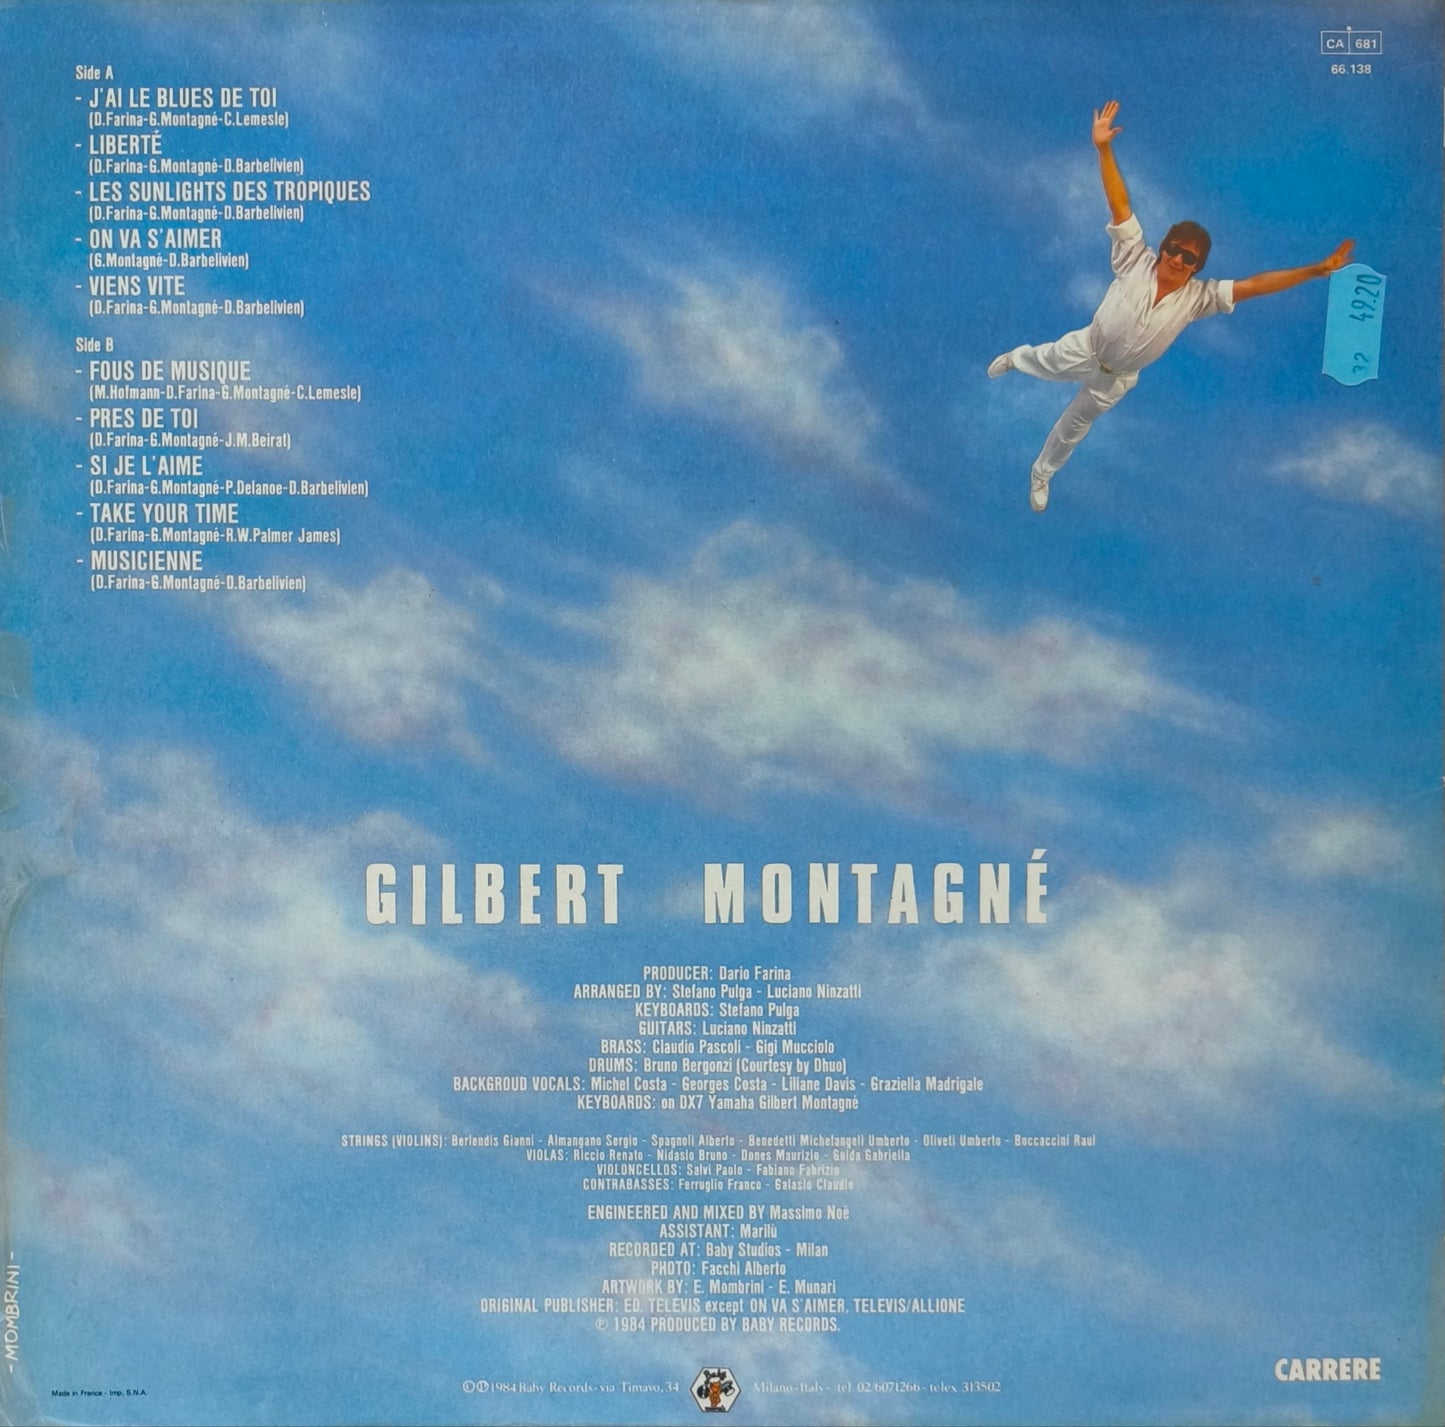 GILBERT MONTAGNE - Liberté